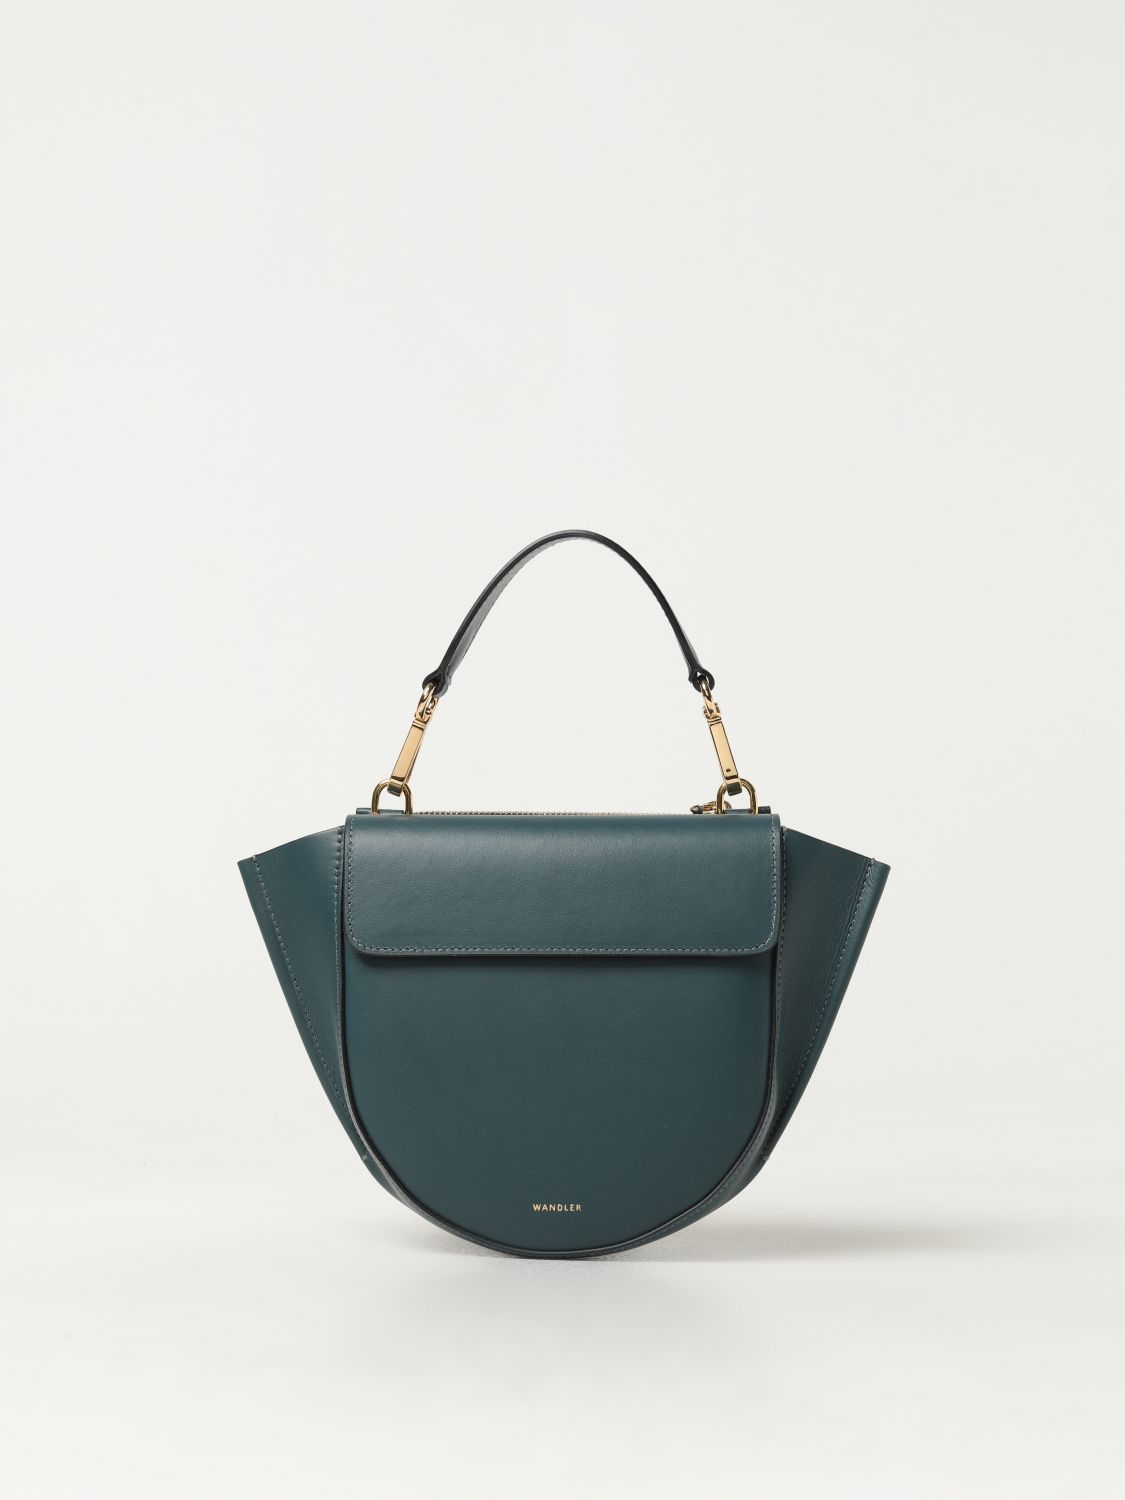 Wandler Handbag WANDLER Woman colour Green